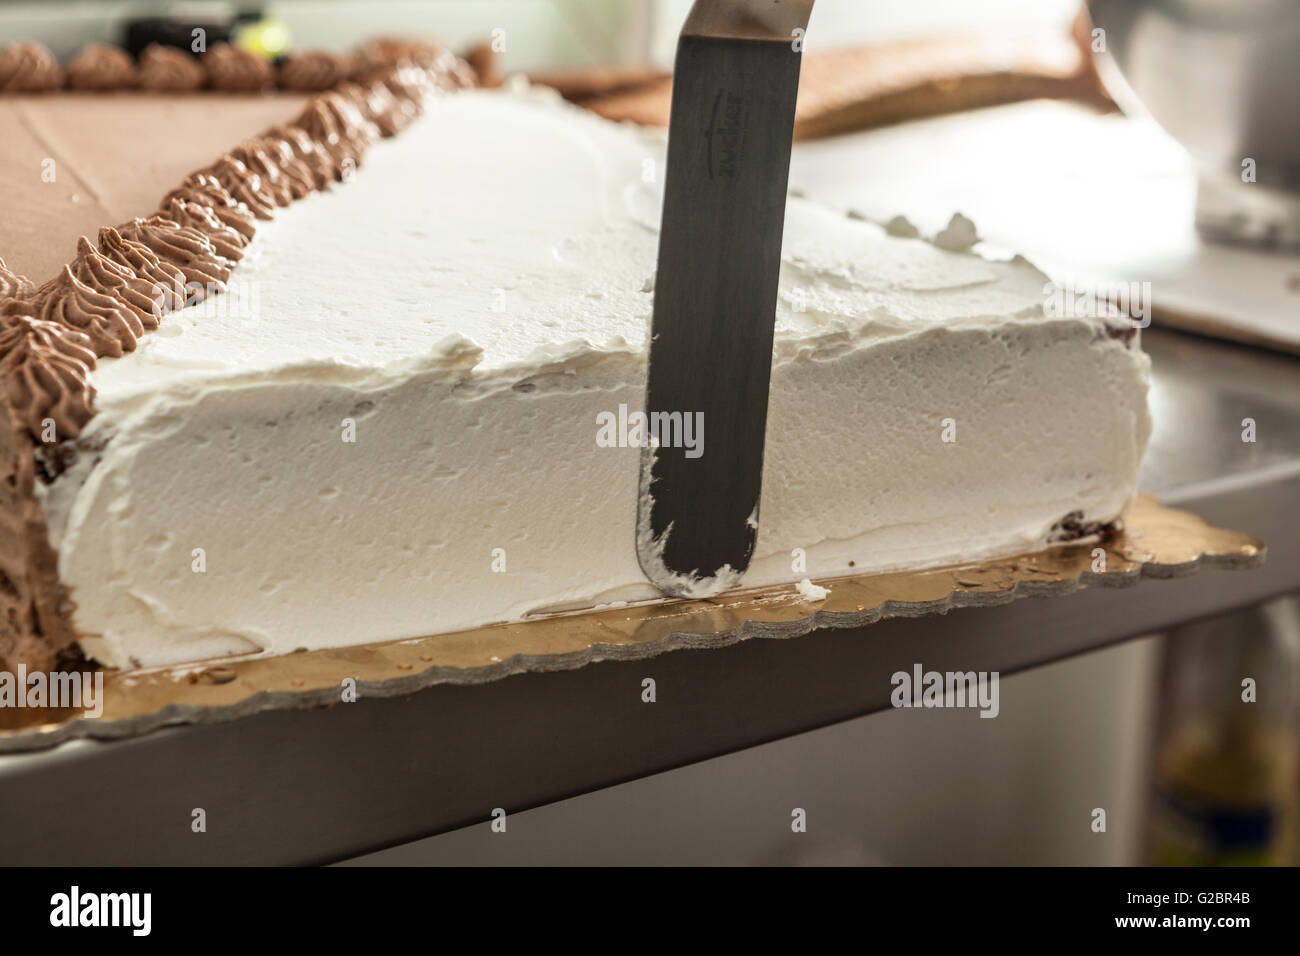 Photo d'un grand gâteau qui est presque fini Banque D'Images